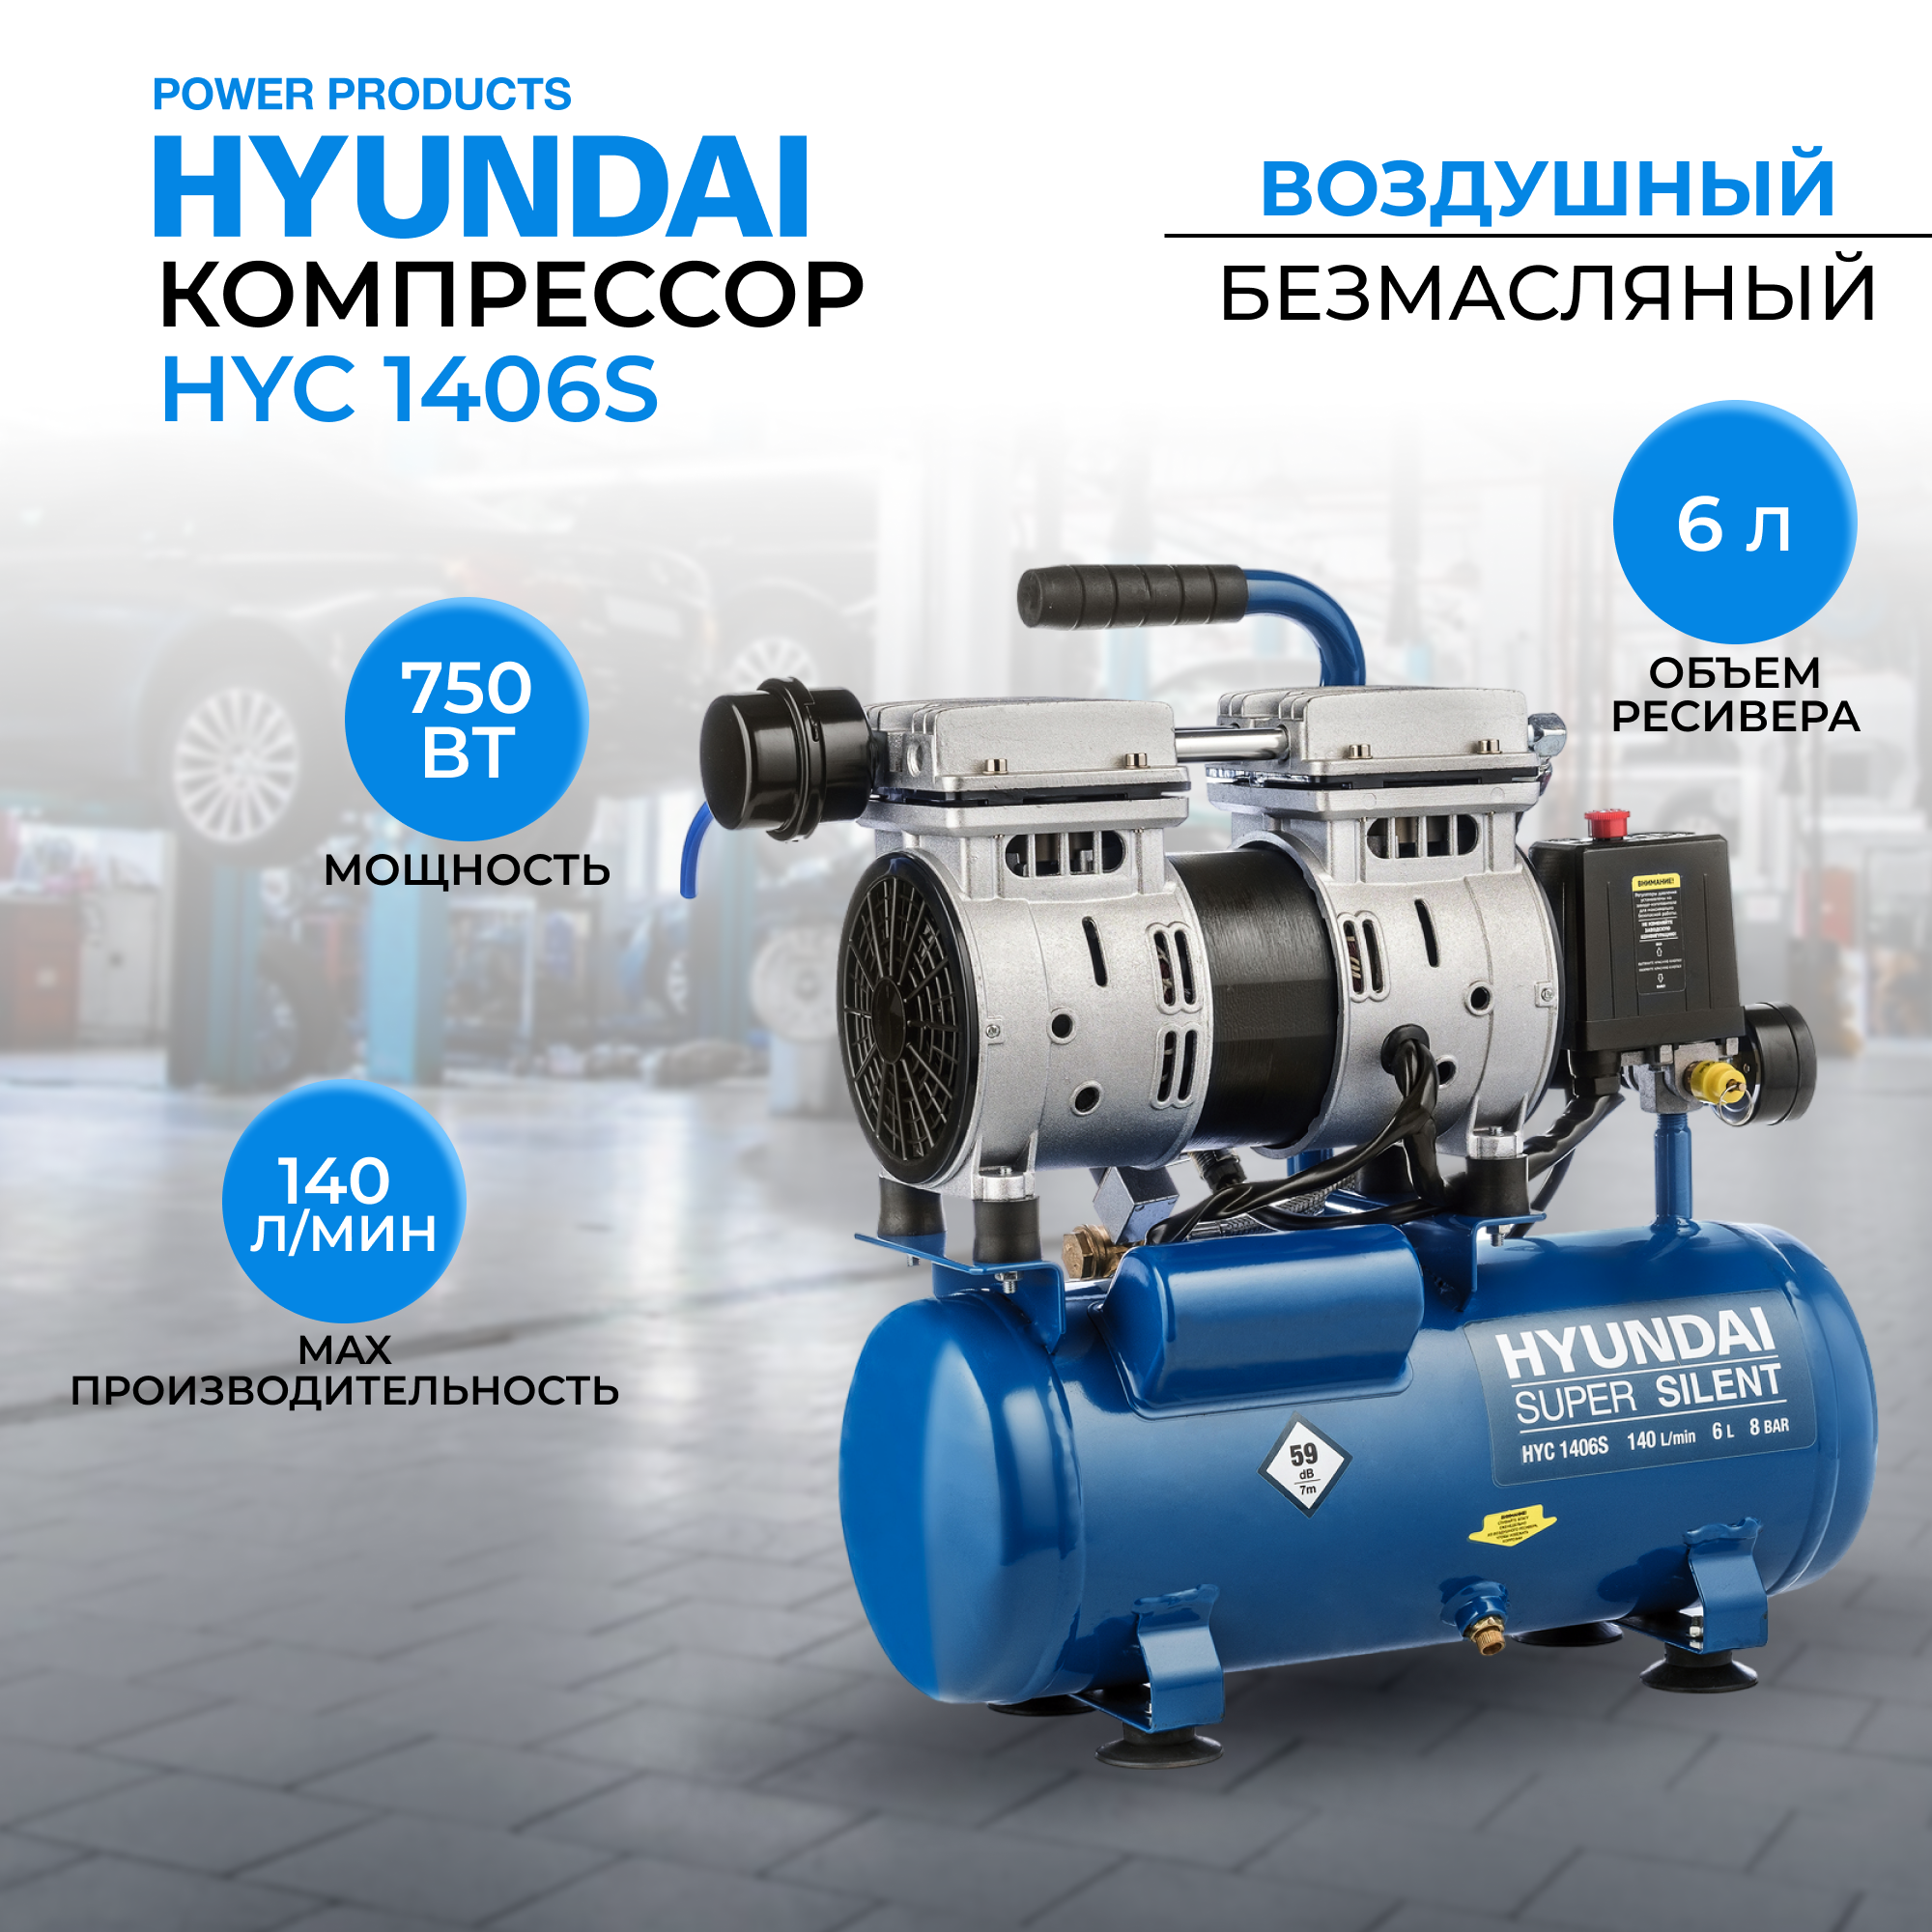 Воздушный поршневой компрессор Hyundai HYC 1406S безмасляный (140 л/мин, 750Вт, 8 бар) компрессор поршневой hyundai hyc 23224lms 24 л 230 л мин